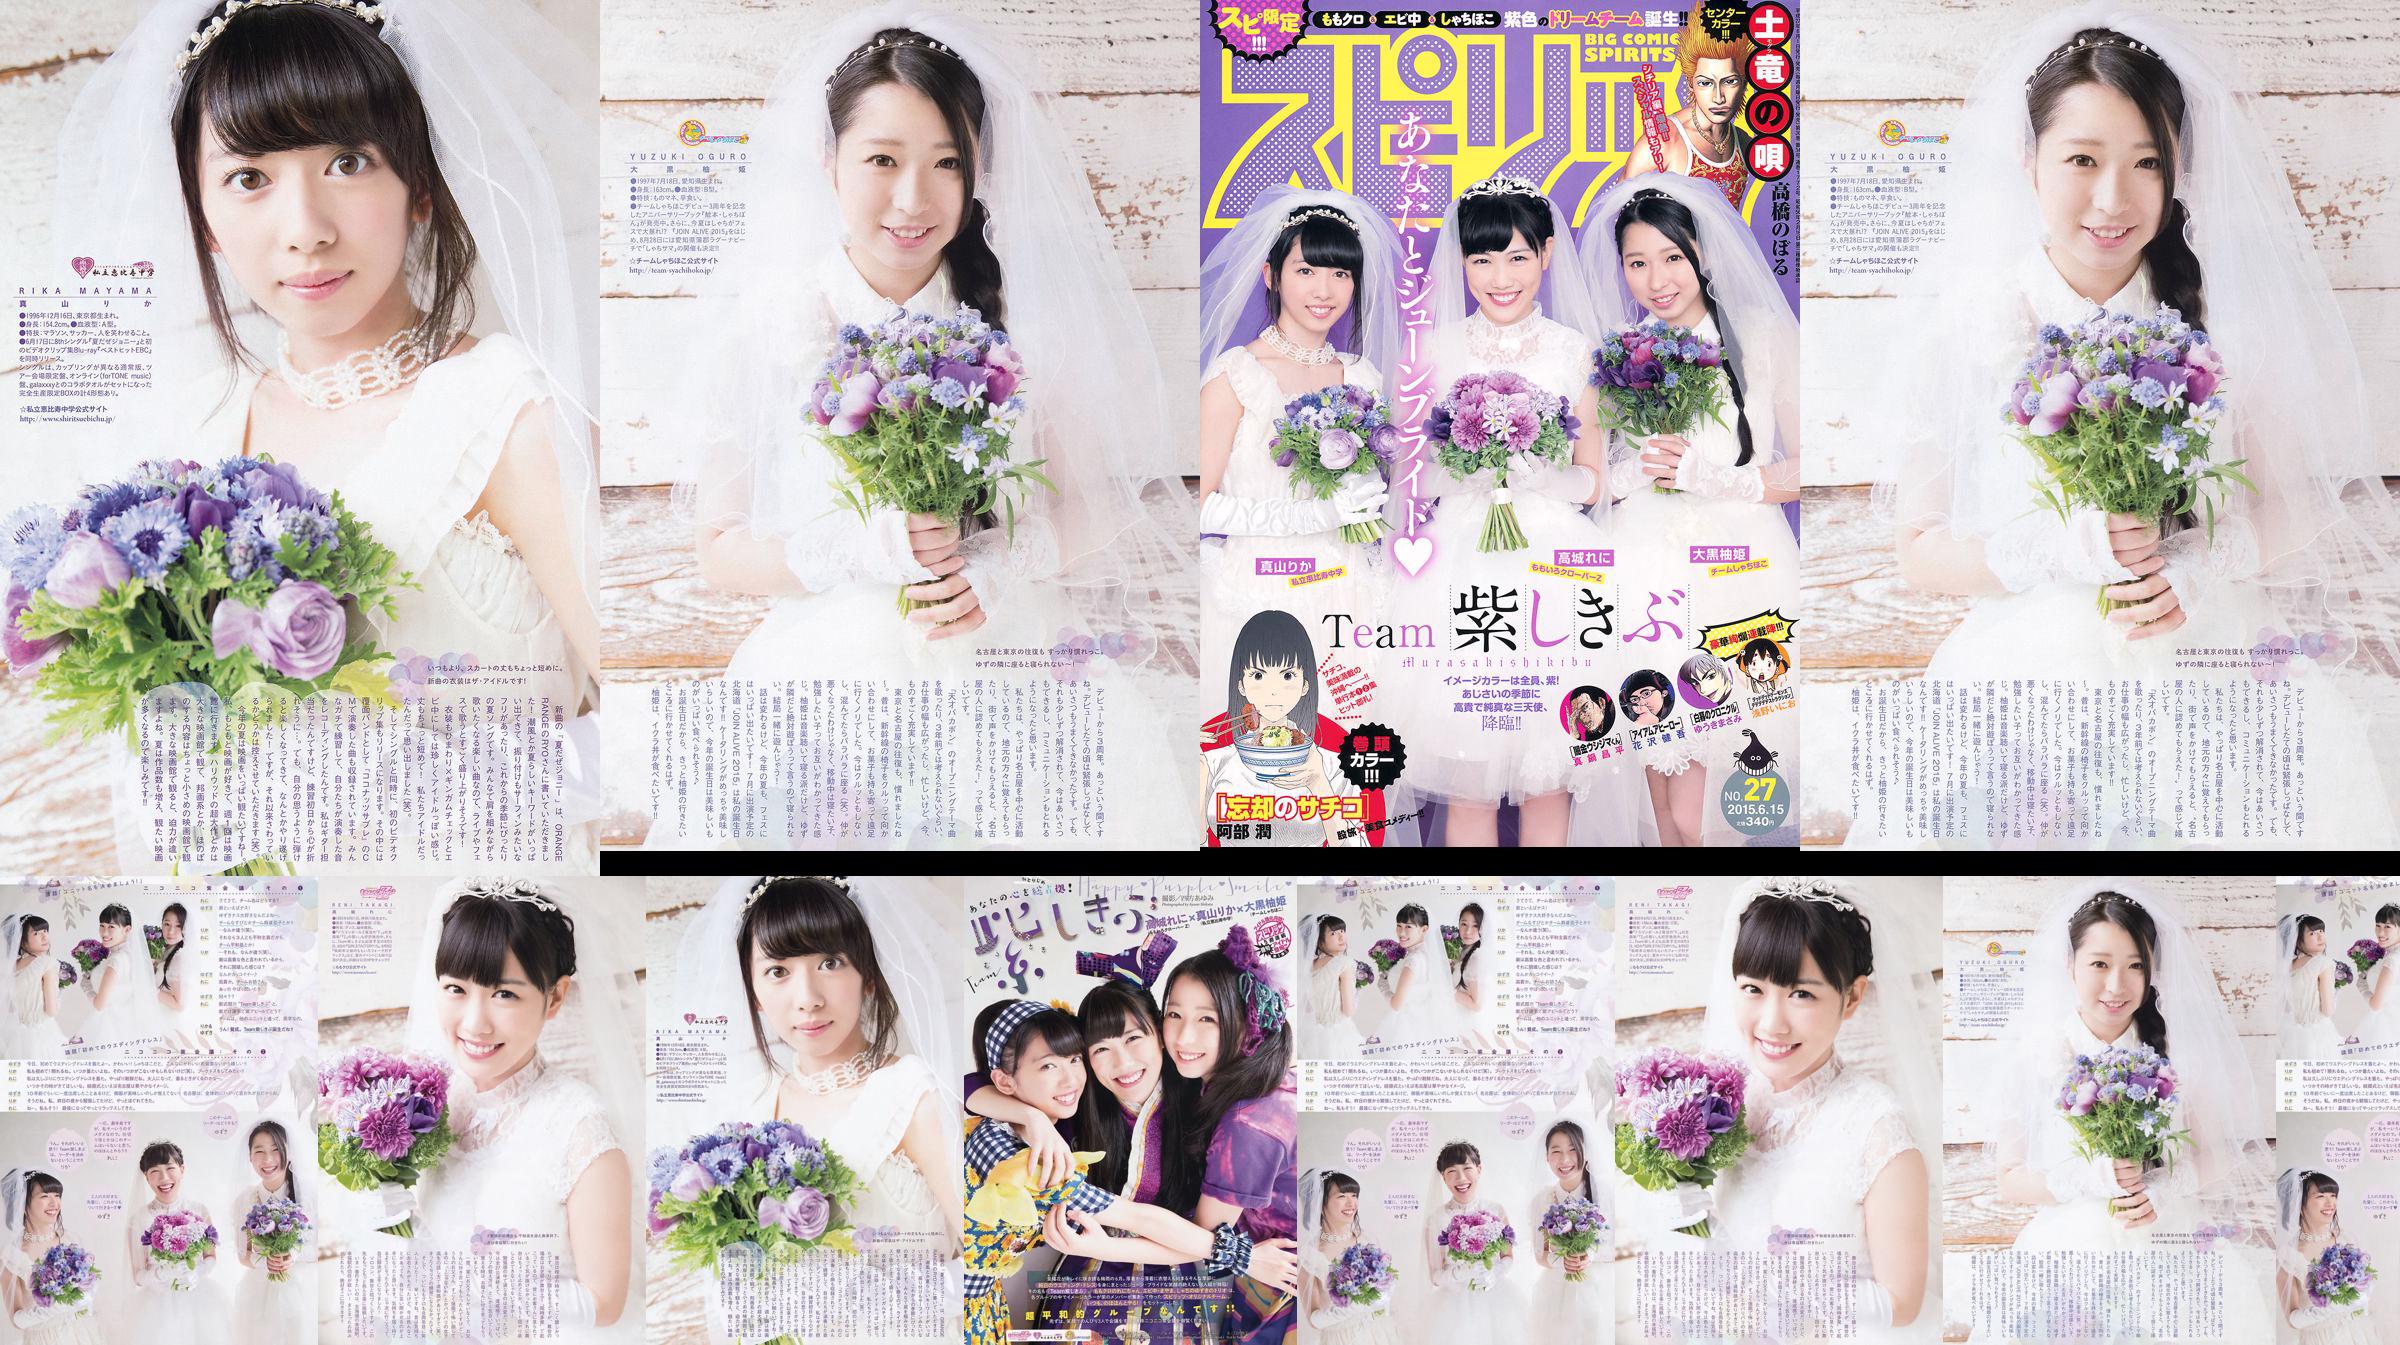 [Weekly Big Comic Spirits] 高城れに 大黒柚姫 真山りか 2015年No.27 写真杂志 No.43d413 第5頁